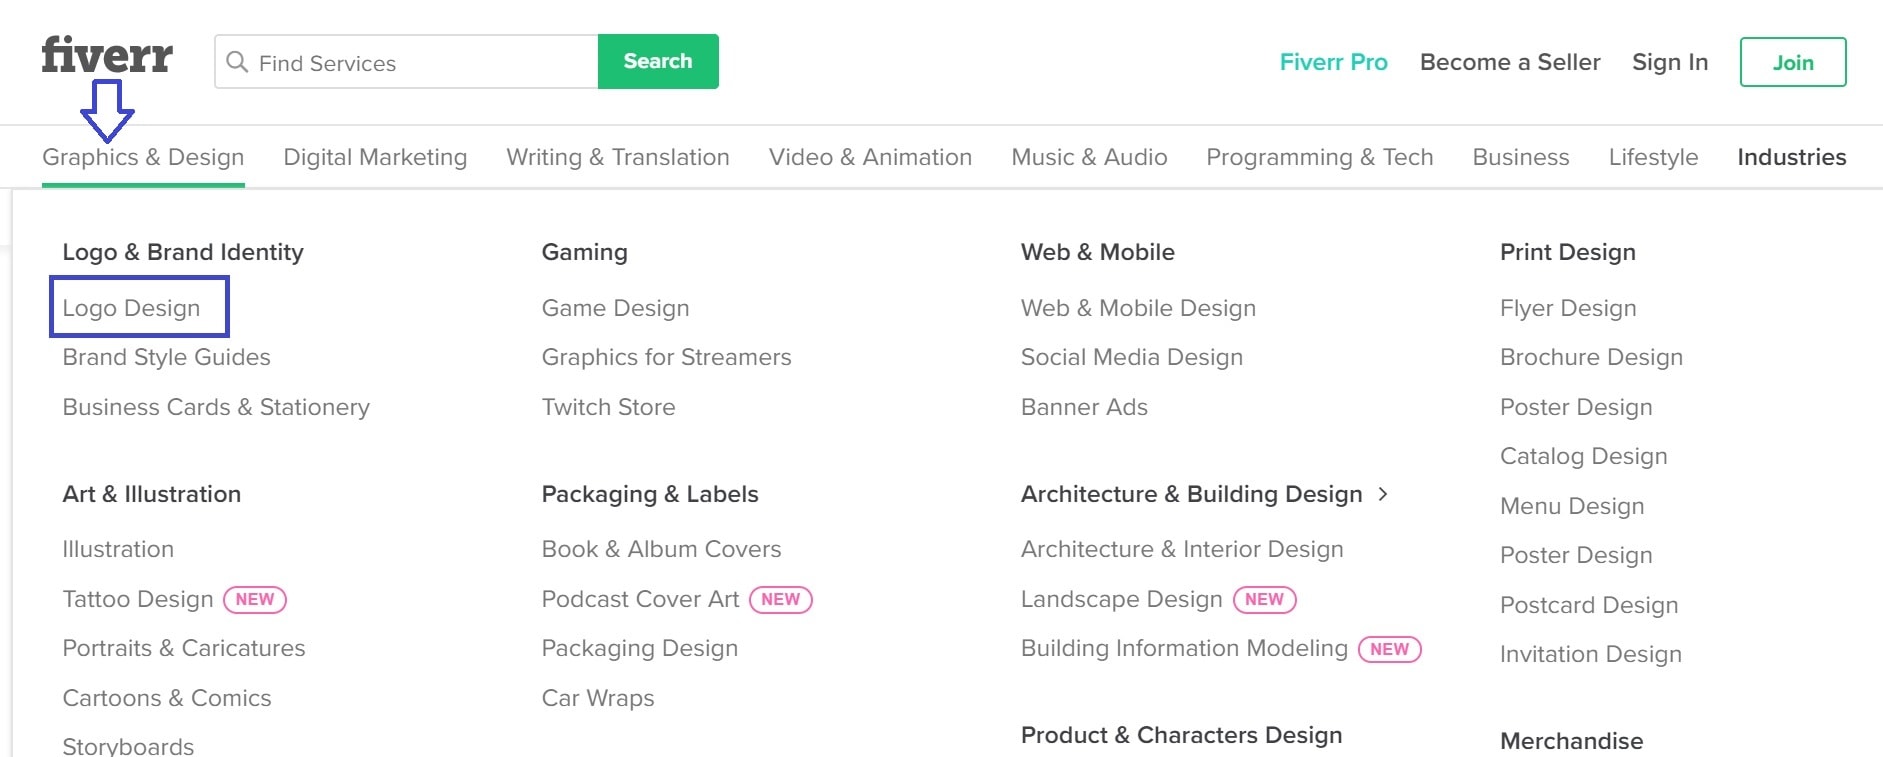 Fiverr screenshot - Graphics & Design menu